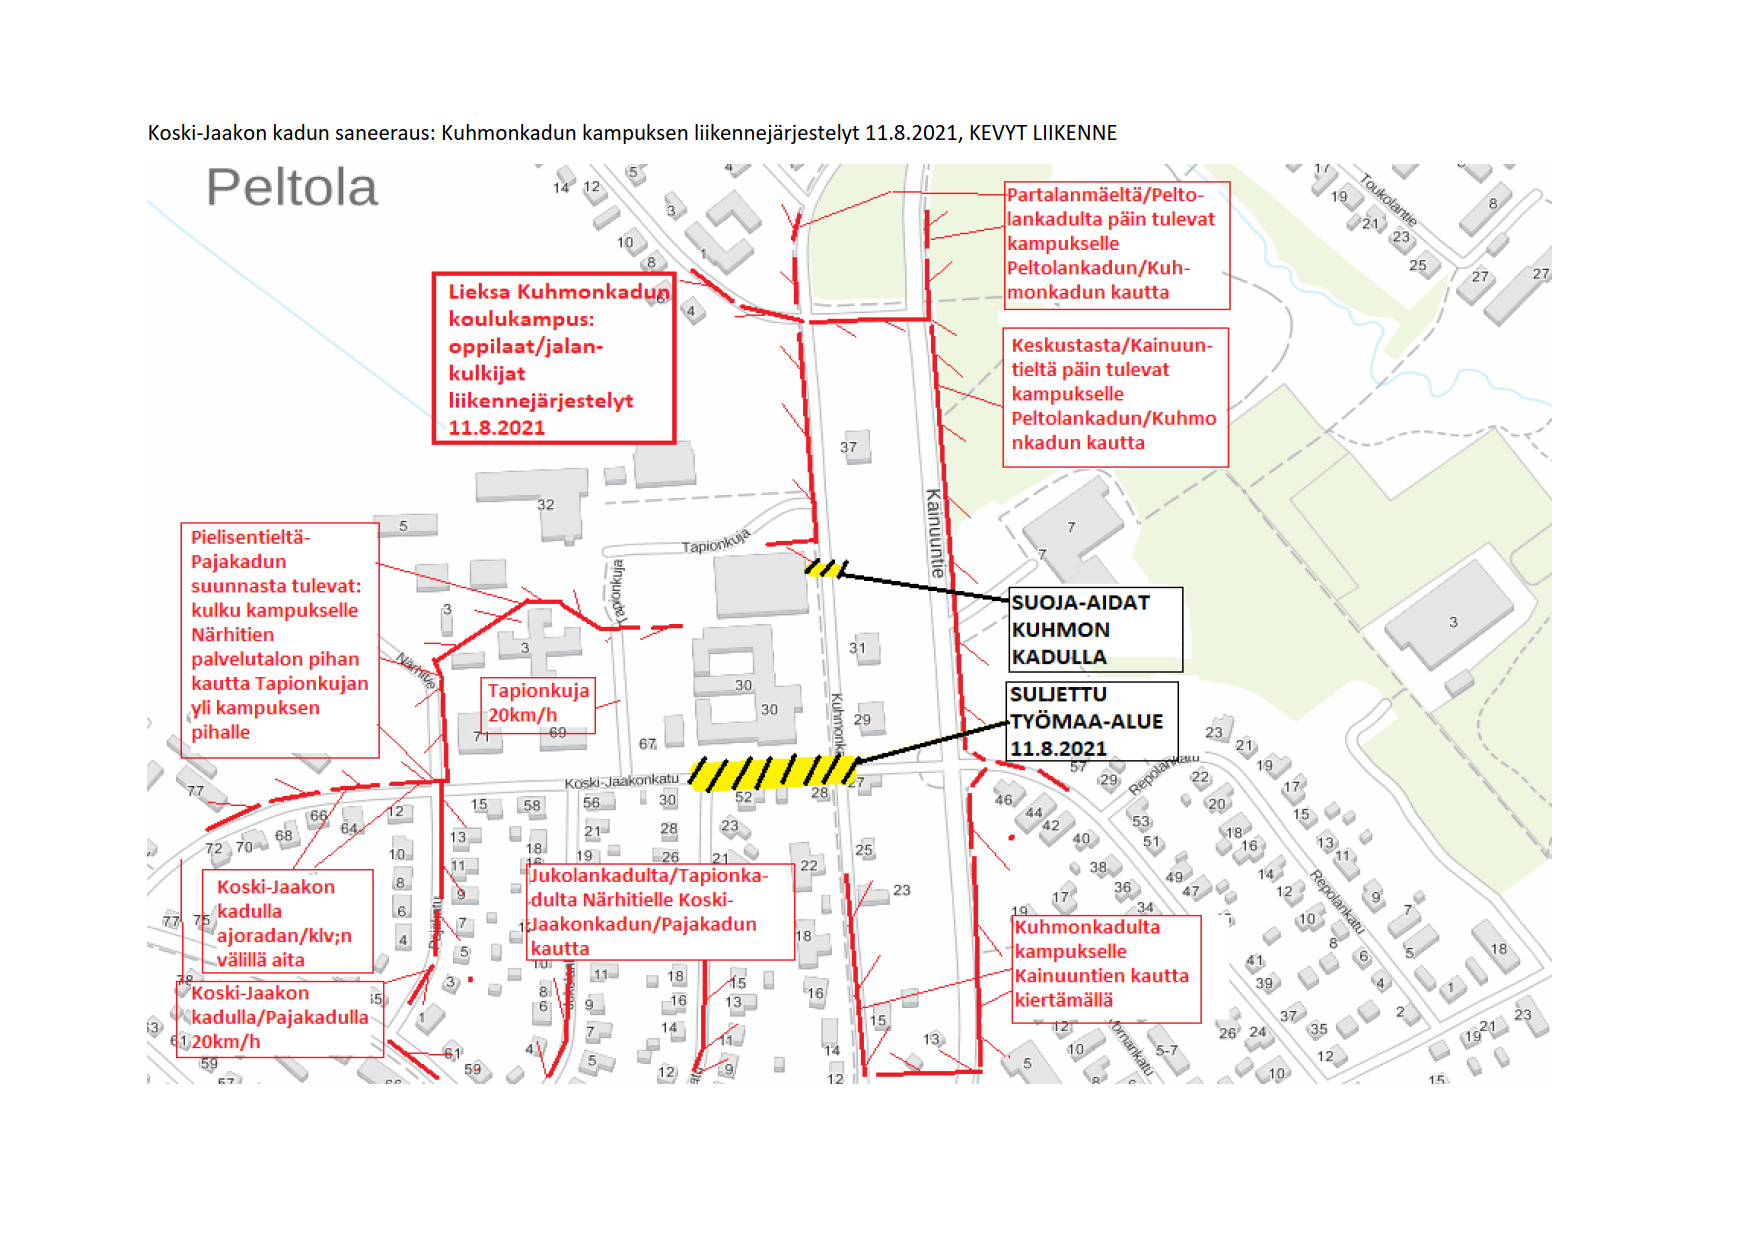 "Karttakuva Brahea-kampuksen alueen muuttuneista liikennejärjestelyistä. Järjestelyt selitetty kuvaa edeltävässä tekstissä."